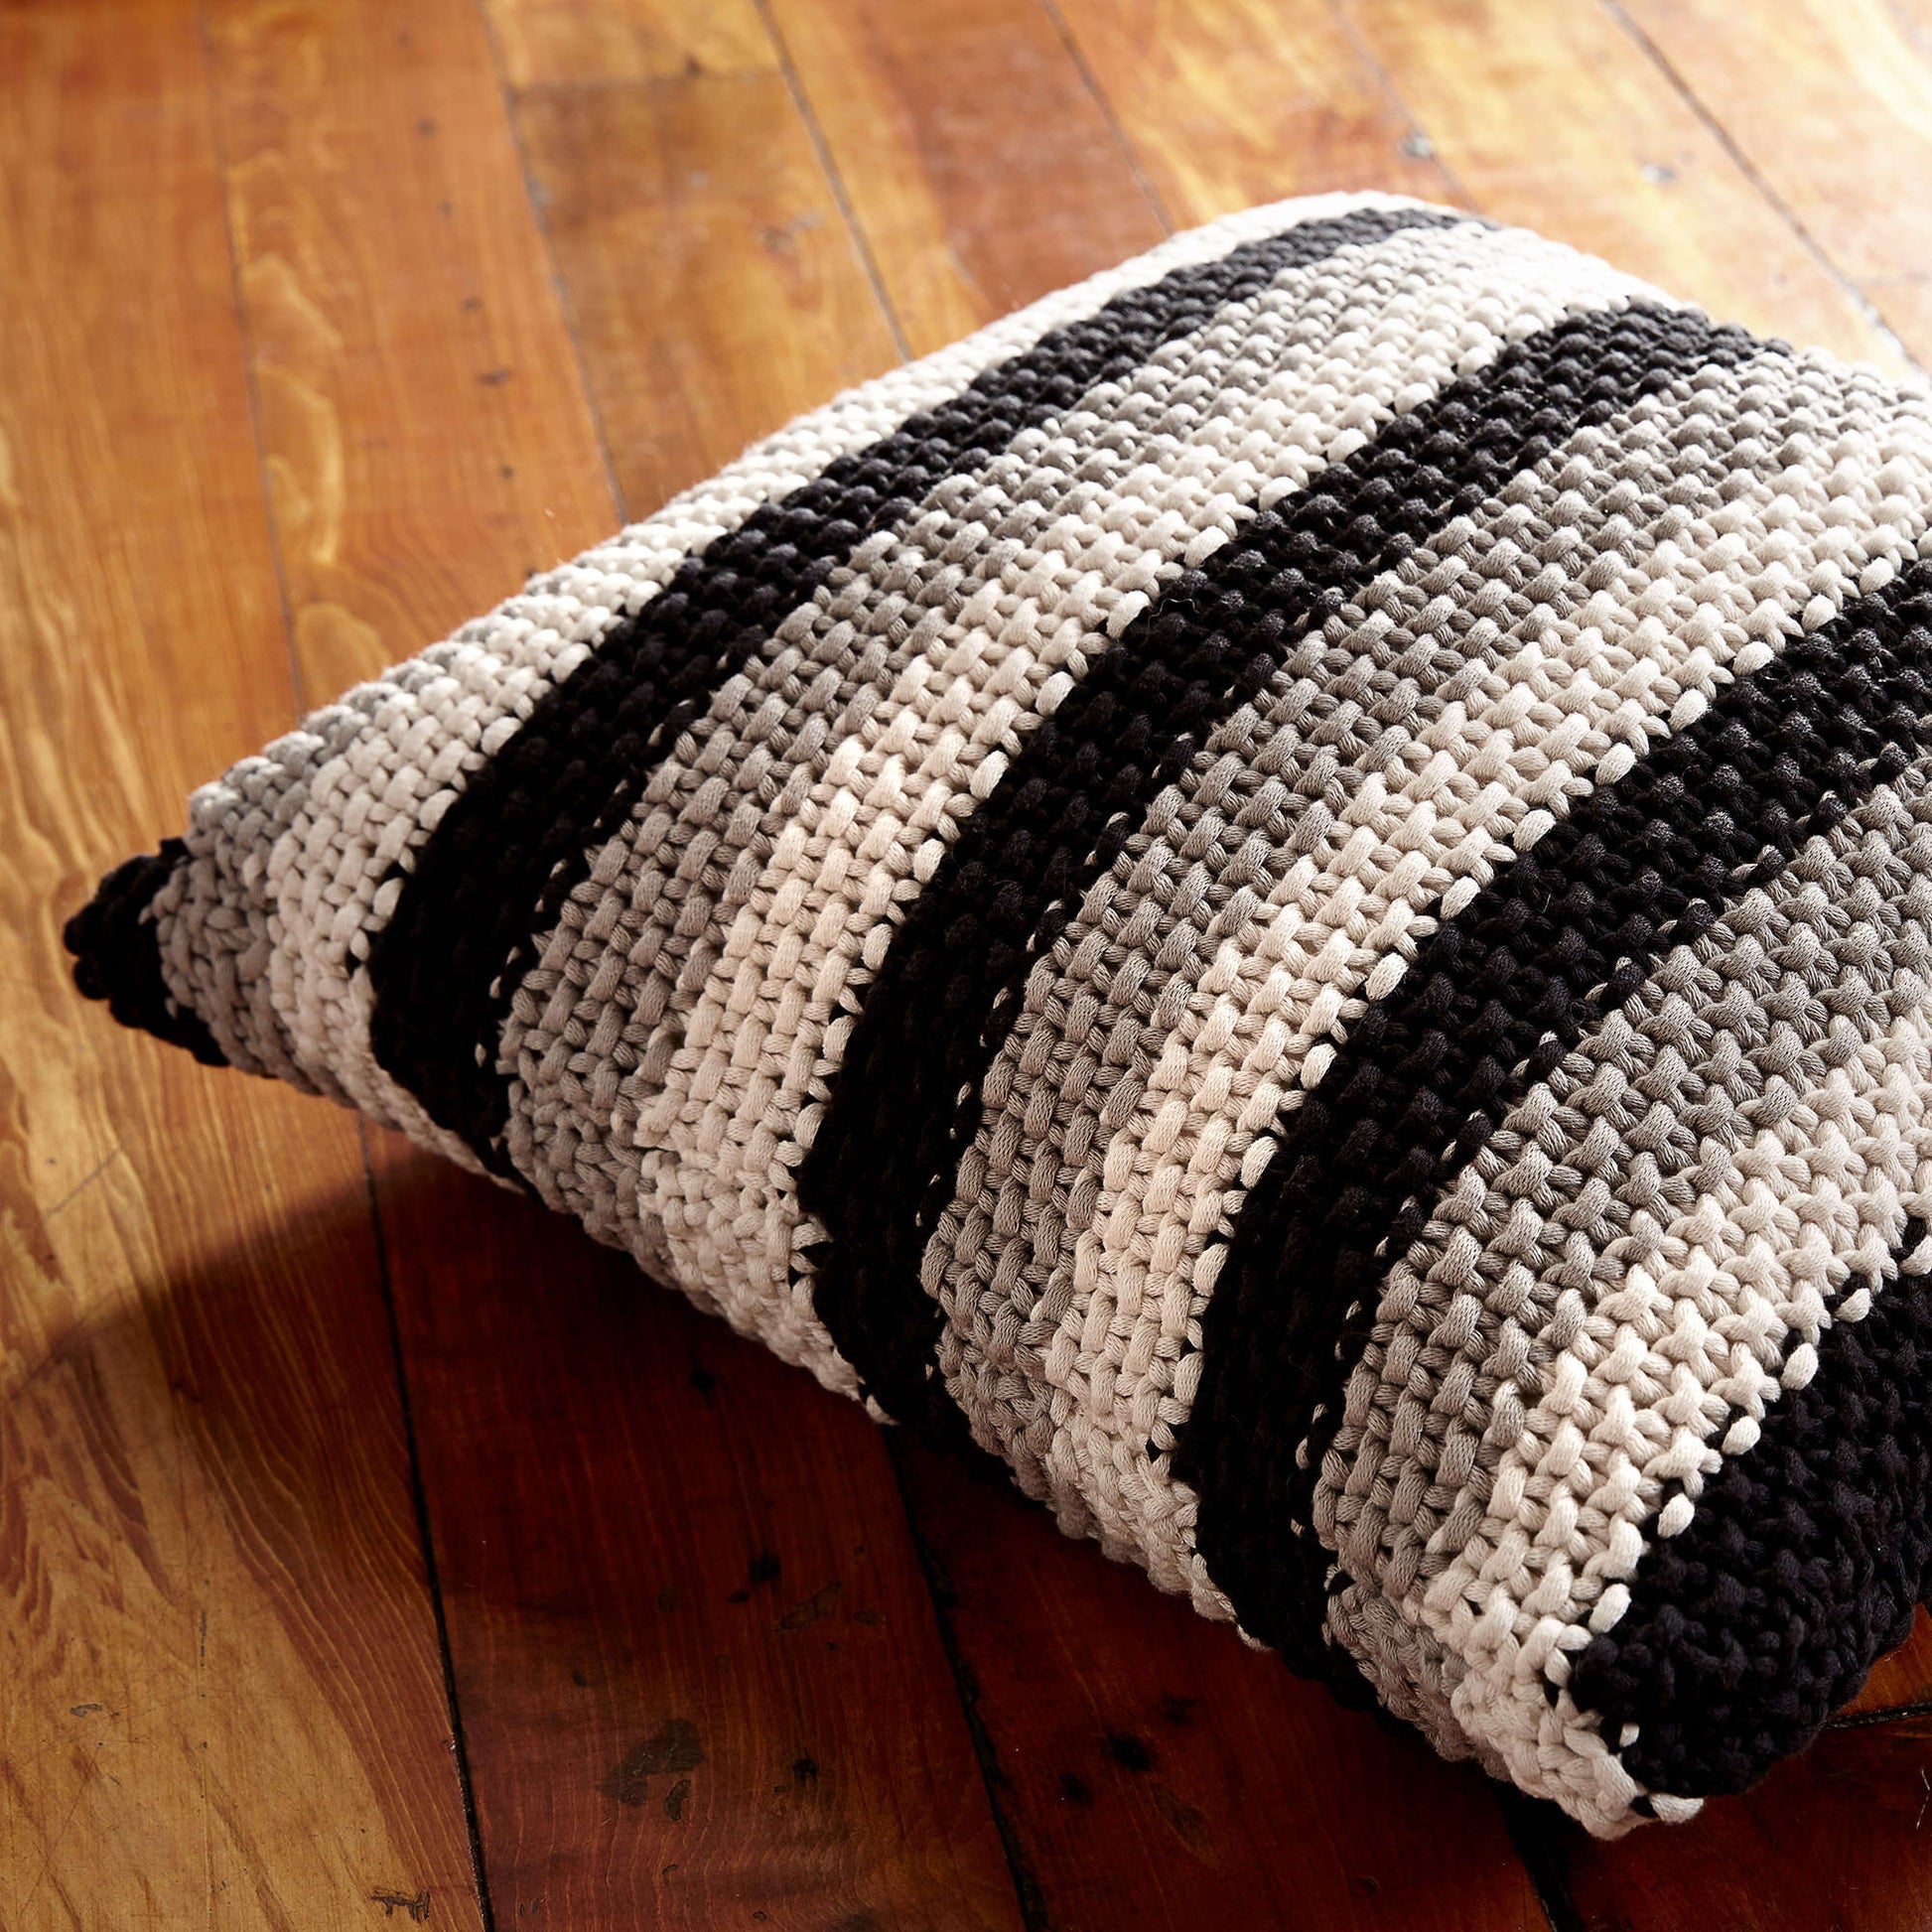 Bernat Stepping Stripes Pillow Knit Pillow made in Bernat Maker Home Dec yarn